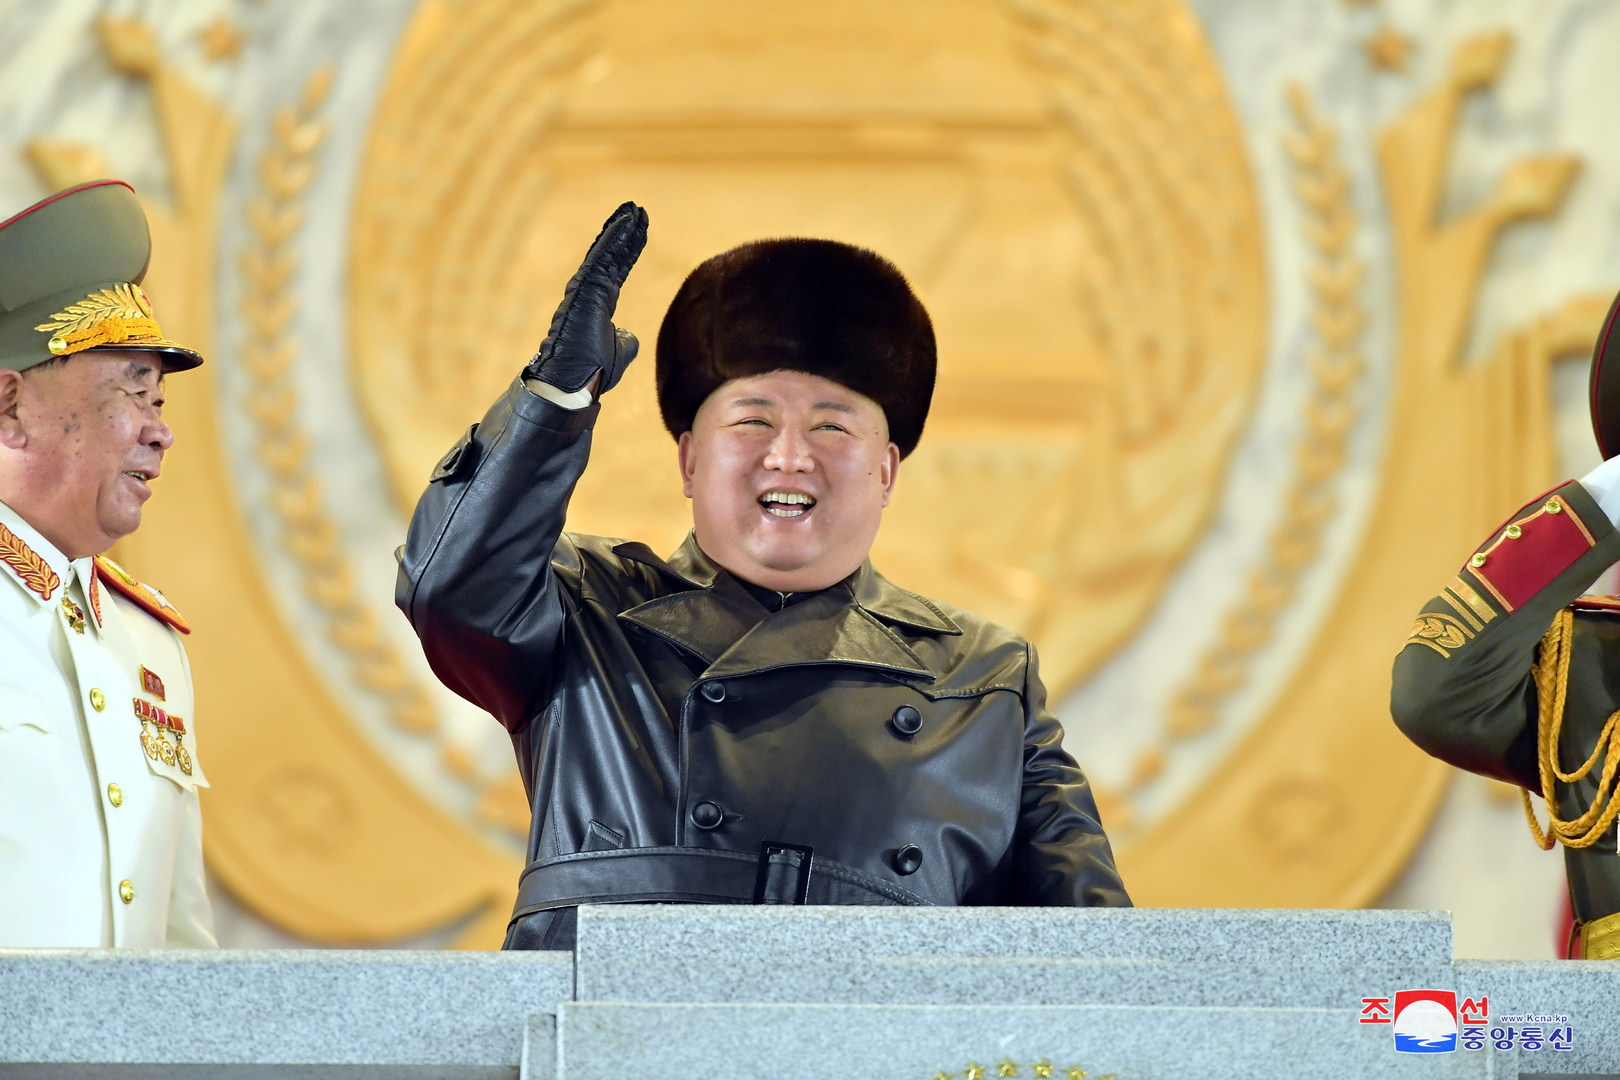 كوريا الشمالية.. جلسة برلمانية بغياب الزعيم كيم جونغ أون وإجراء تعديل وزاري كبير